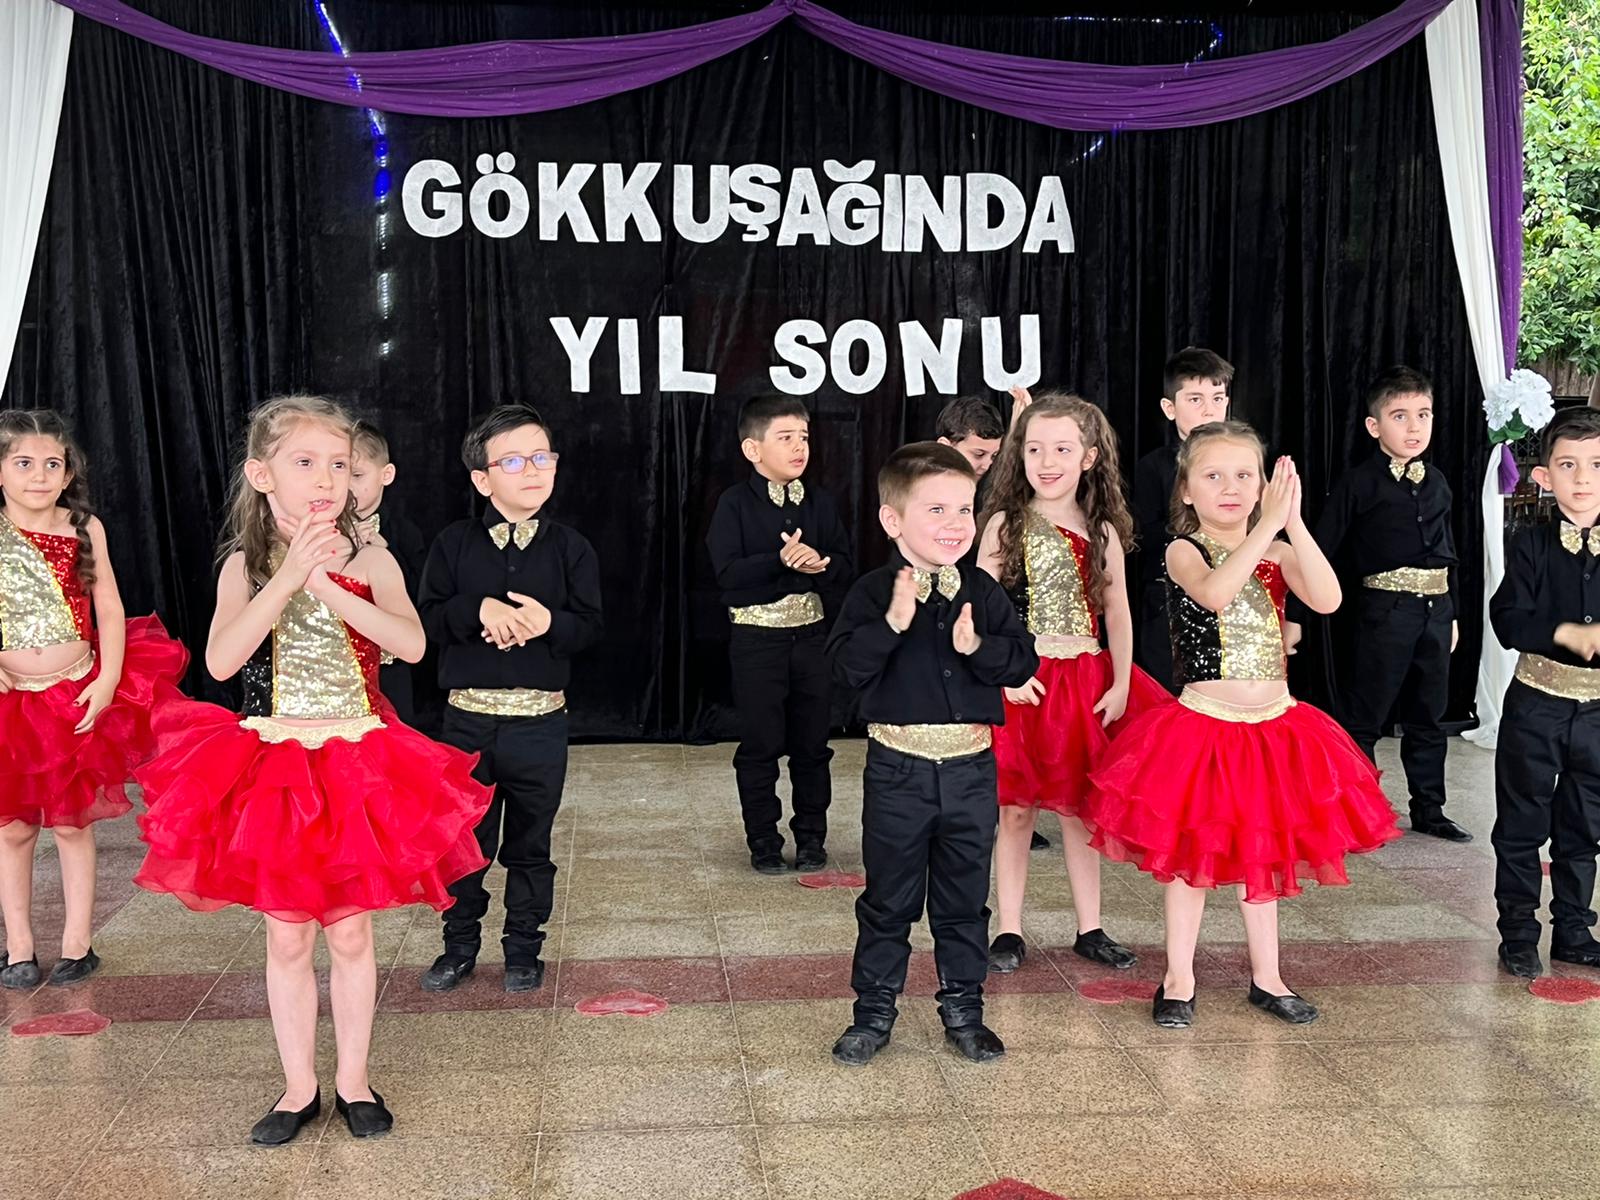 Tarsus Gökkuşağı Kreş Gündüz Bakım Evi 2021-2022 Eğitim ve Öğretim sezonunu muhteşem bir yılsonu gösterisi ile kapattı.